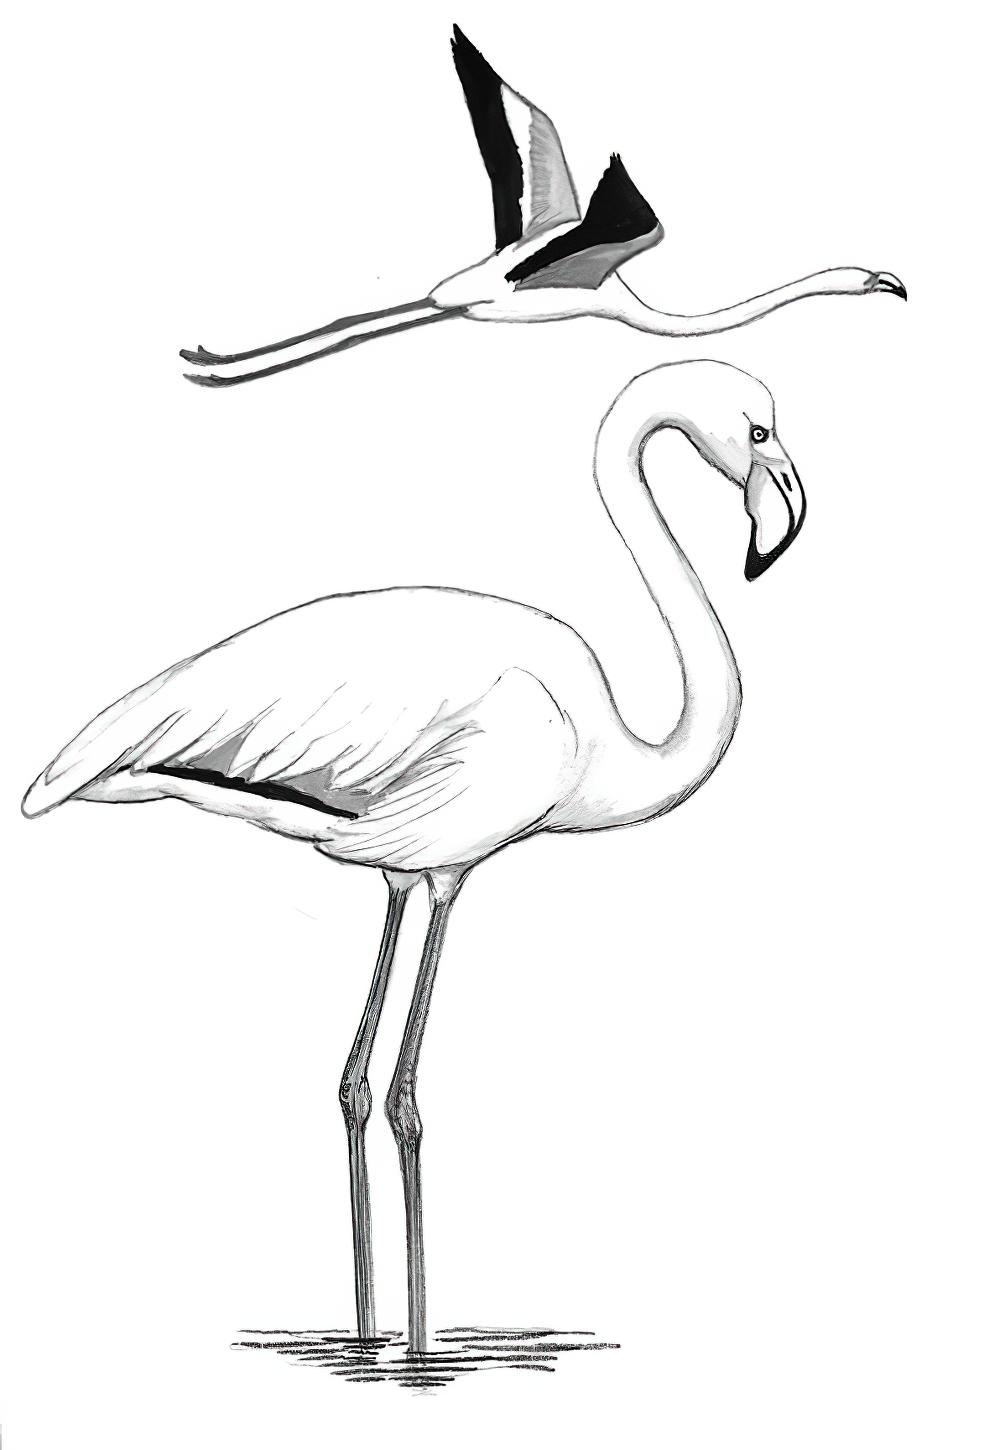 大红鹳 / Greater Flamingo / Phoenicopterus roseus